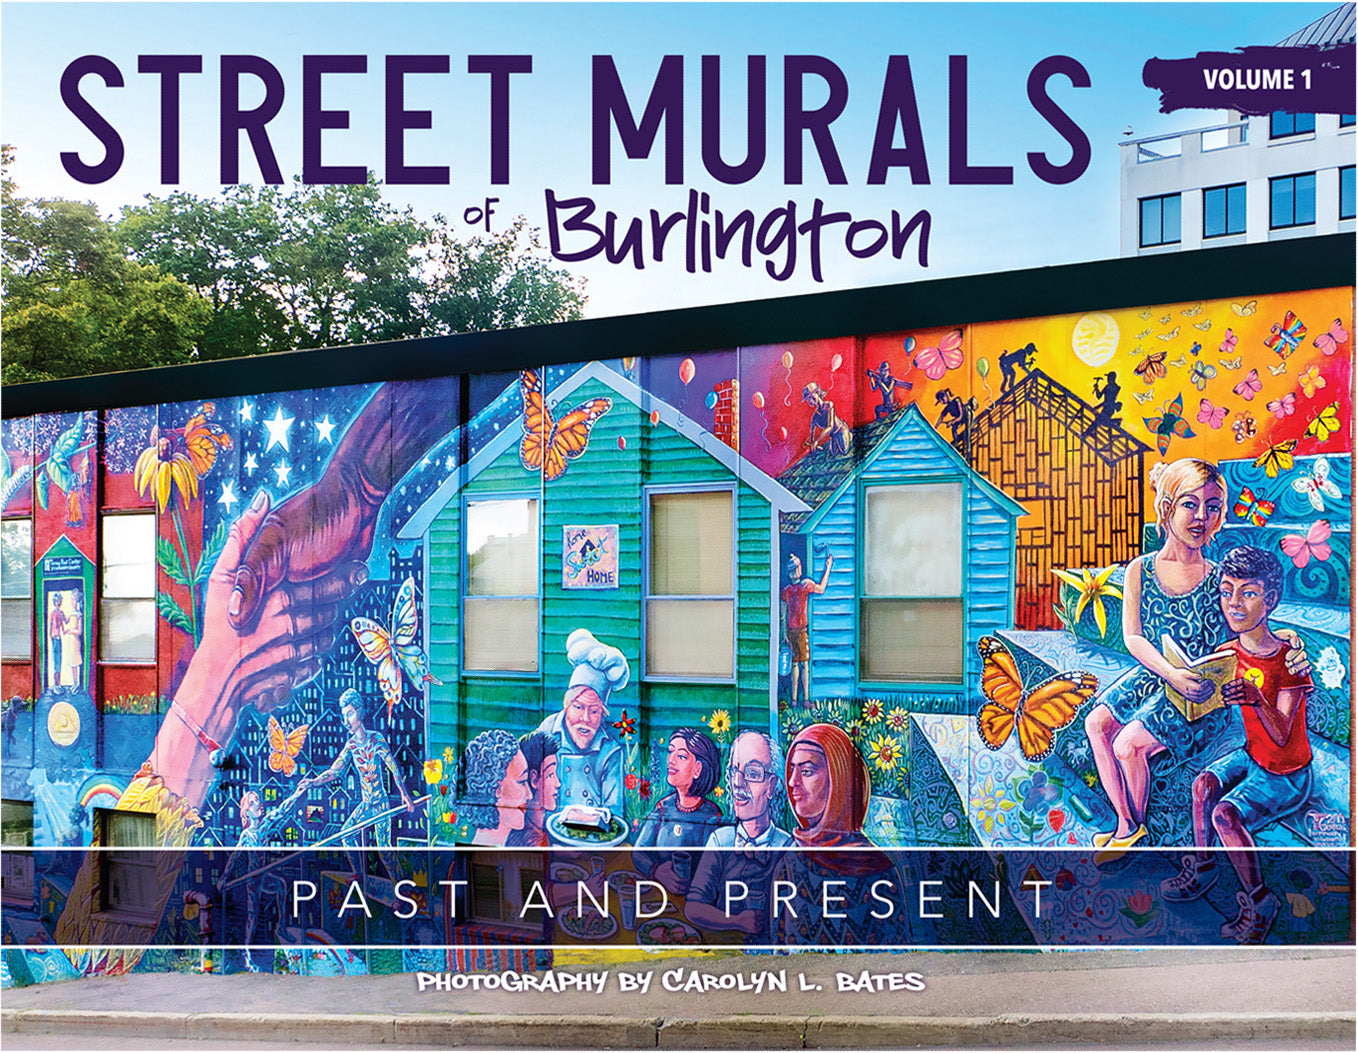 STREET MURALS of Burlington - Volume 1